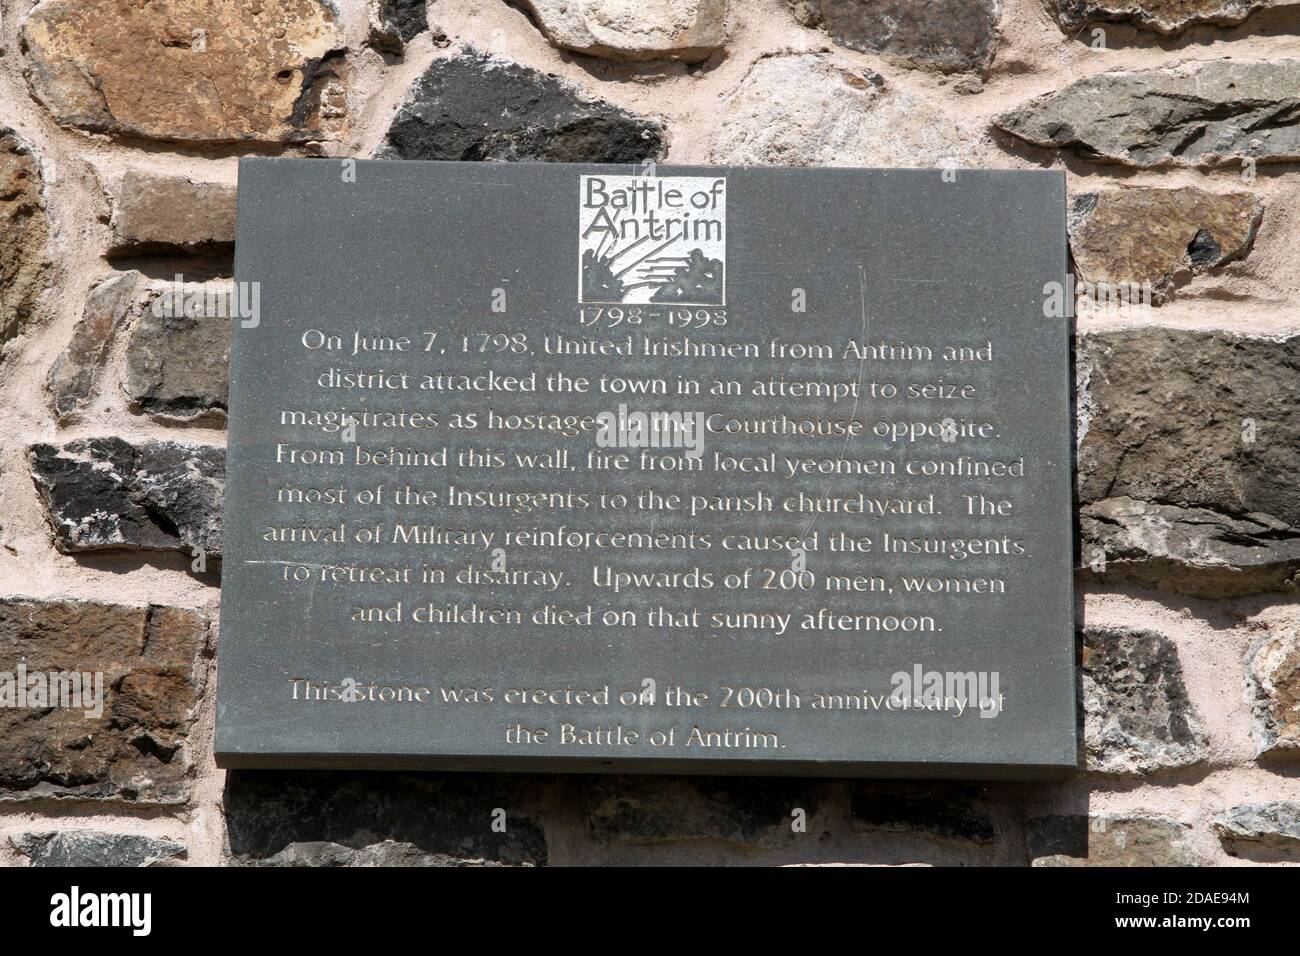 Antrim Irlande du Nord. Plaque rappelant la bataille d'Antrim sur 7 juin 1798. Pilier en pierre et plaque a été érigé lieu à l'anniversaire de la bataille d'Antrim sur 7 juin 1798 en 200th, des Irlandais Unis d'Antrim et du district ont attaqué la ville dans une tentative de saisir des magistrats comme otages dans le palais de justice en face. De l'arrière de ce mur, le feu des yéomen locaux a confiné la plupart des insurgés au chantier de la paroisse. L'arrivée des renforts militaires a causé la retraite des insurgés dans le désarroi. Plus de 200 hommes, femmes et enfants sont morts cet après-midi ensoleillé. Banque D'Images